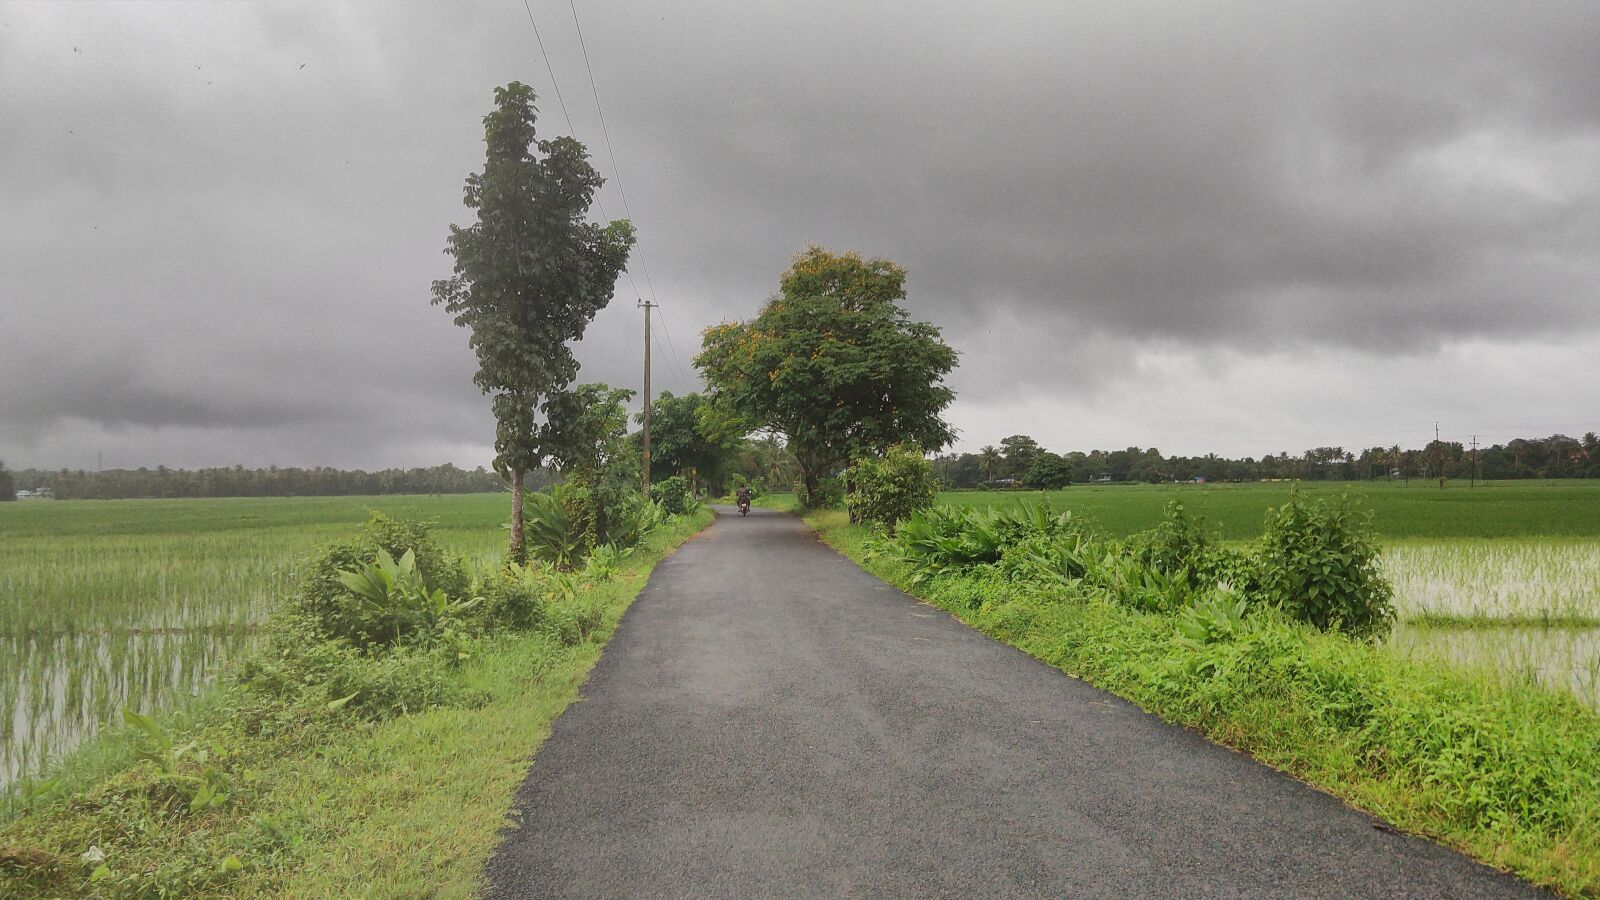 Motorola moto x4 sample photo. Kerala, monsoon, road photography